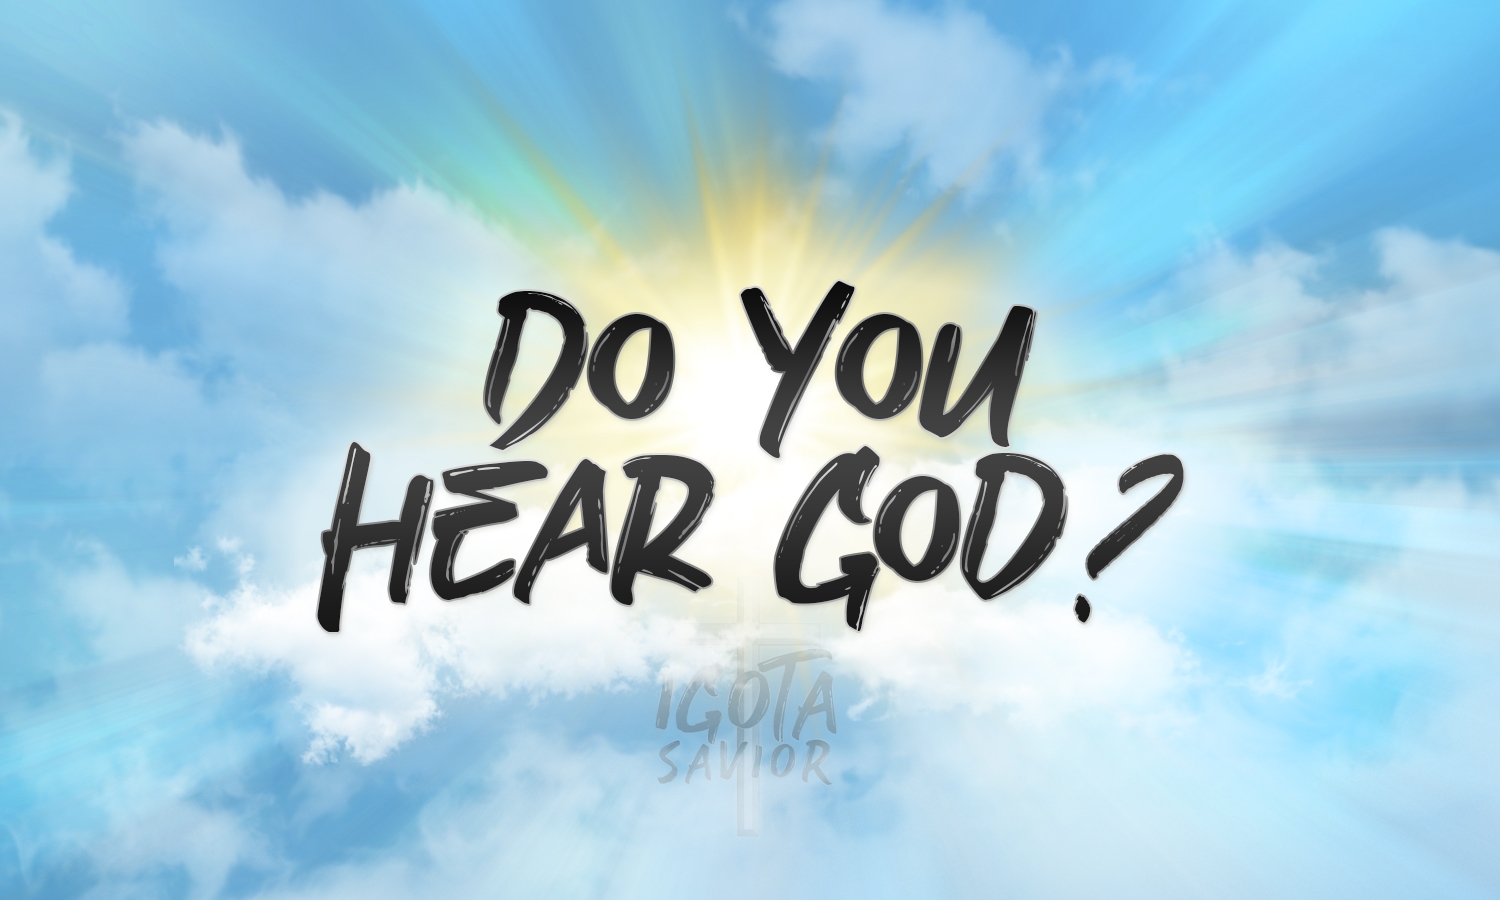 Do You Hear God?